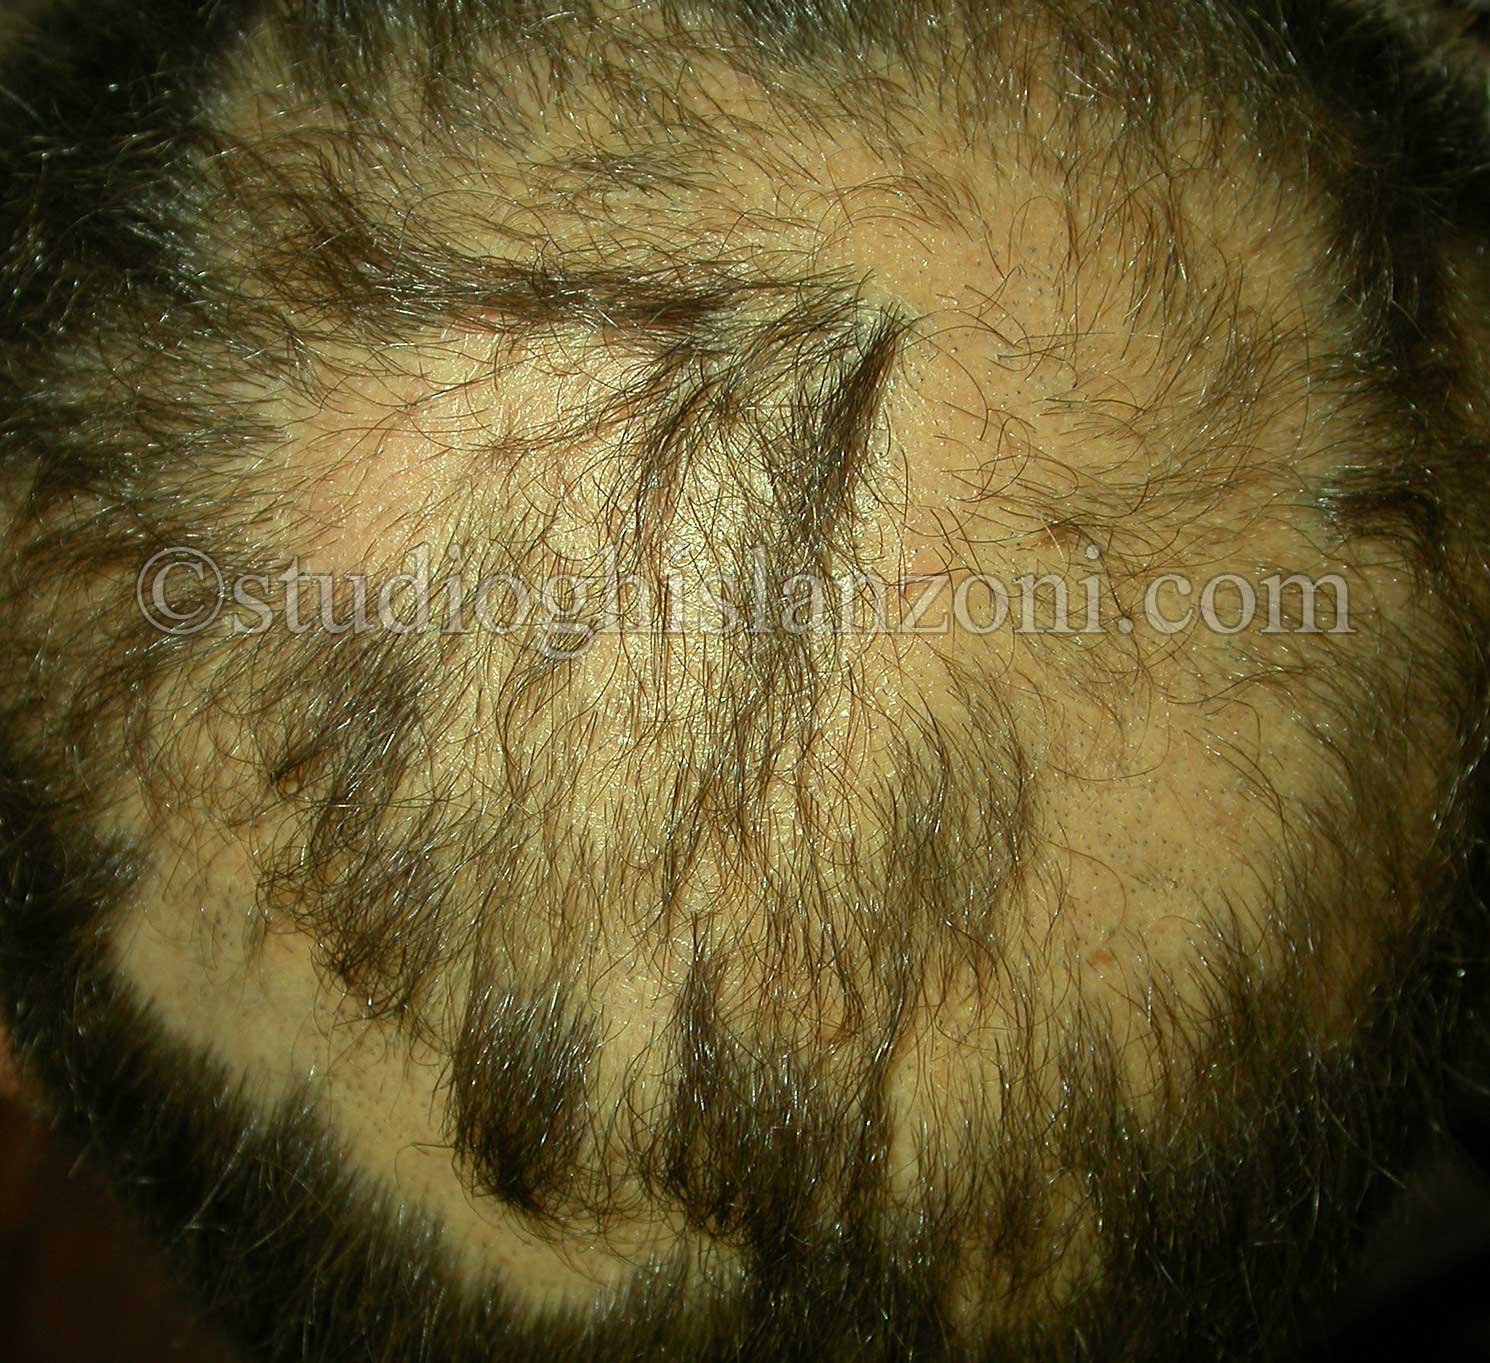 Chiazze-multiple-di-Alopecia-areata.jpg